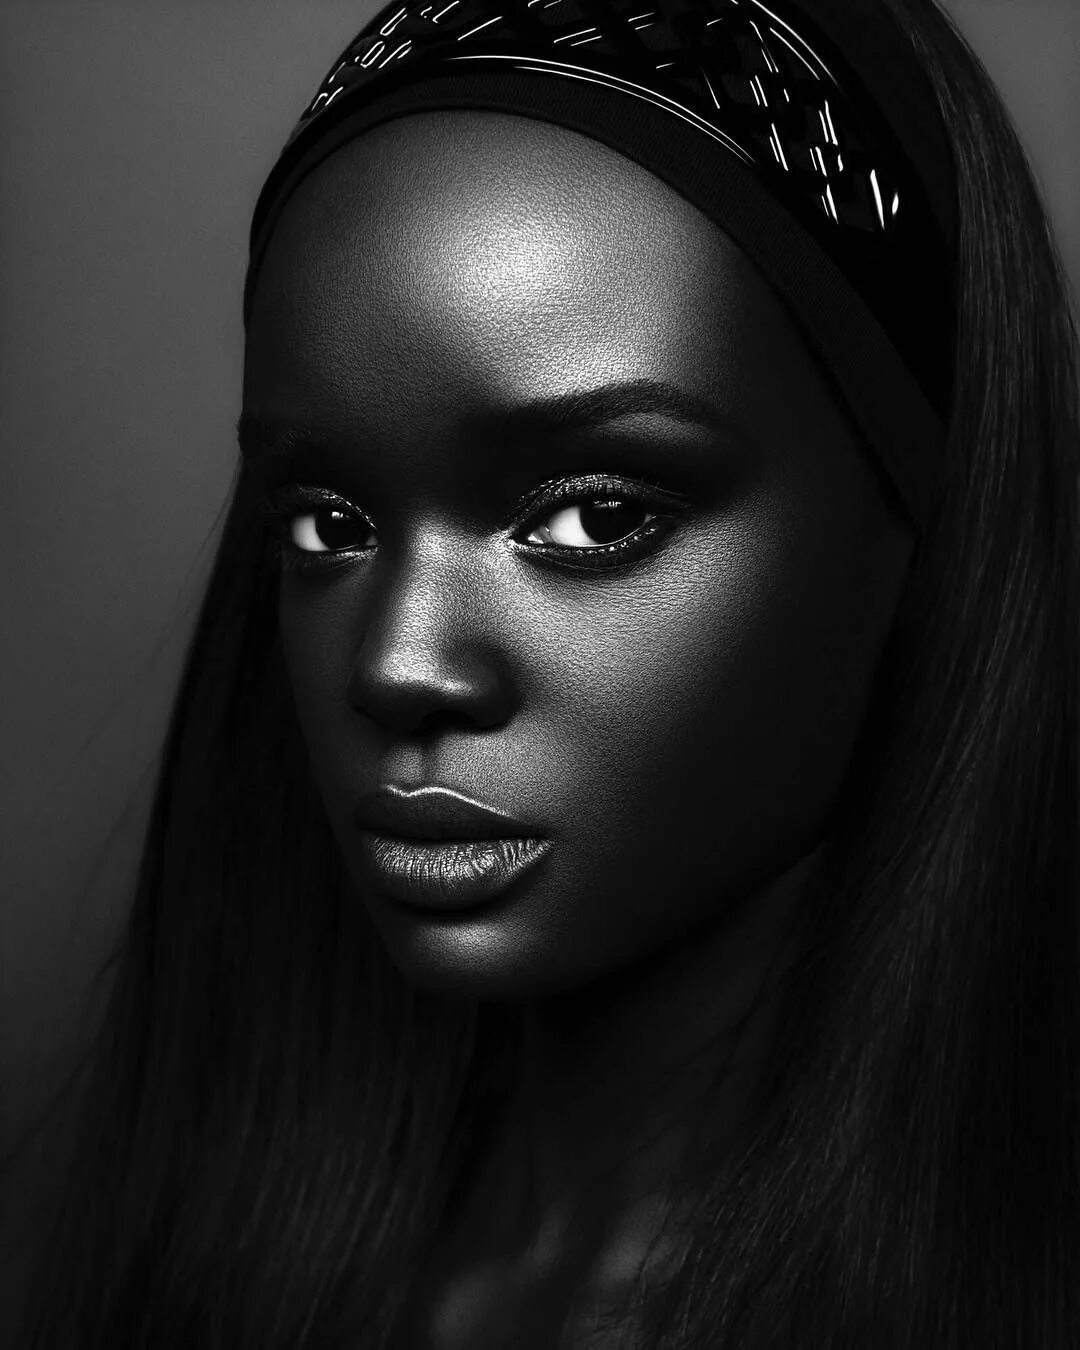 Кожа негритянок. Модель даки тот (Duckie thot) из Южного Судана. Брук Бейли темнокожая модель. Пегги Даниэль темнокожая модель.